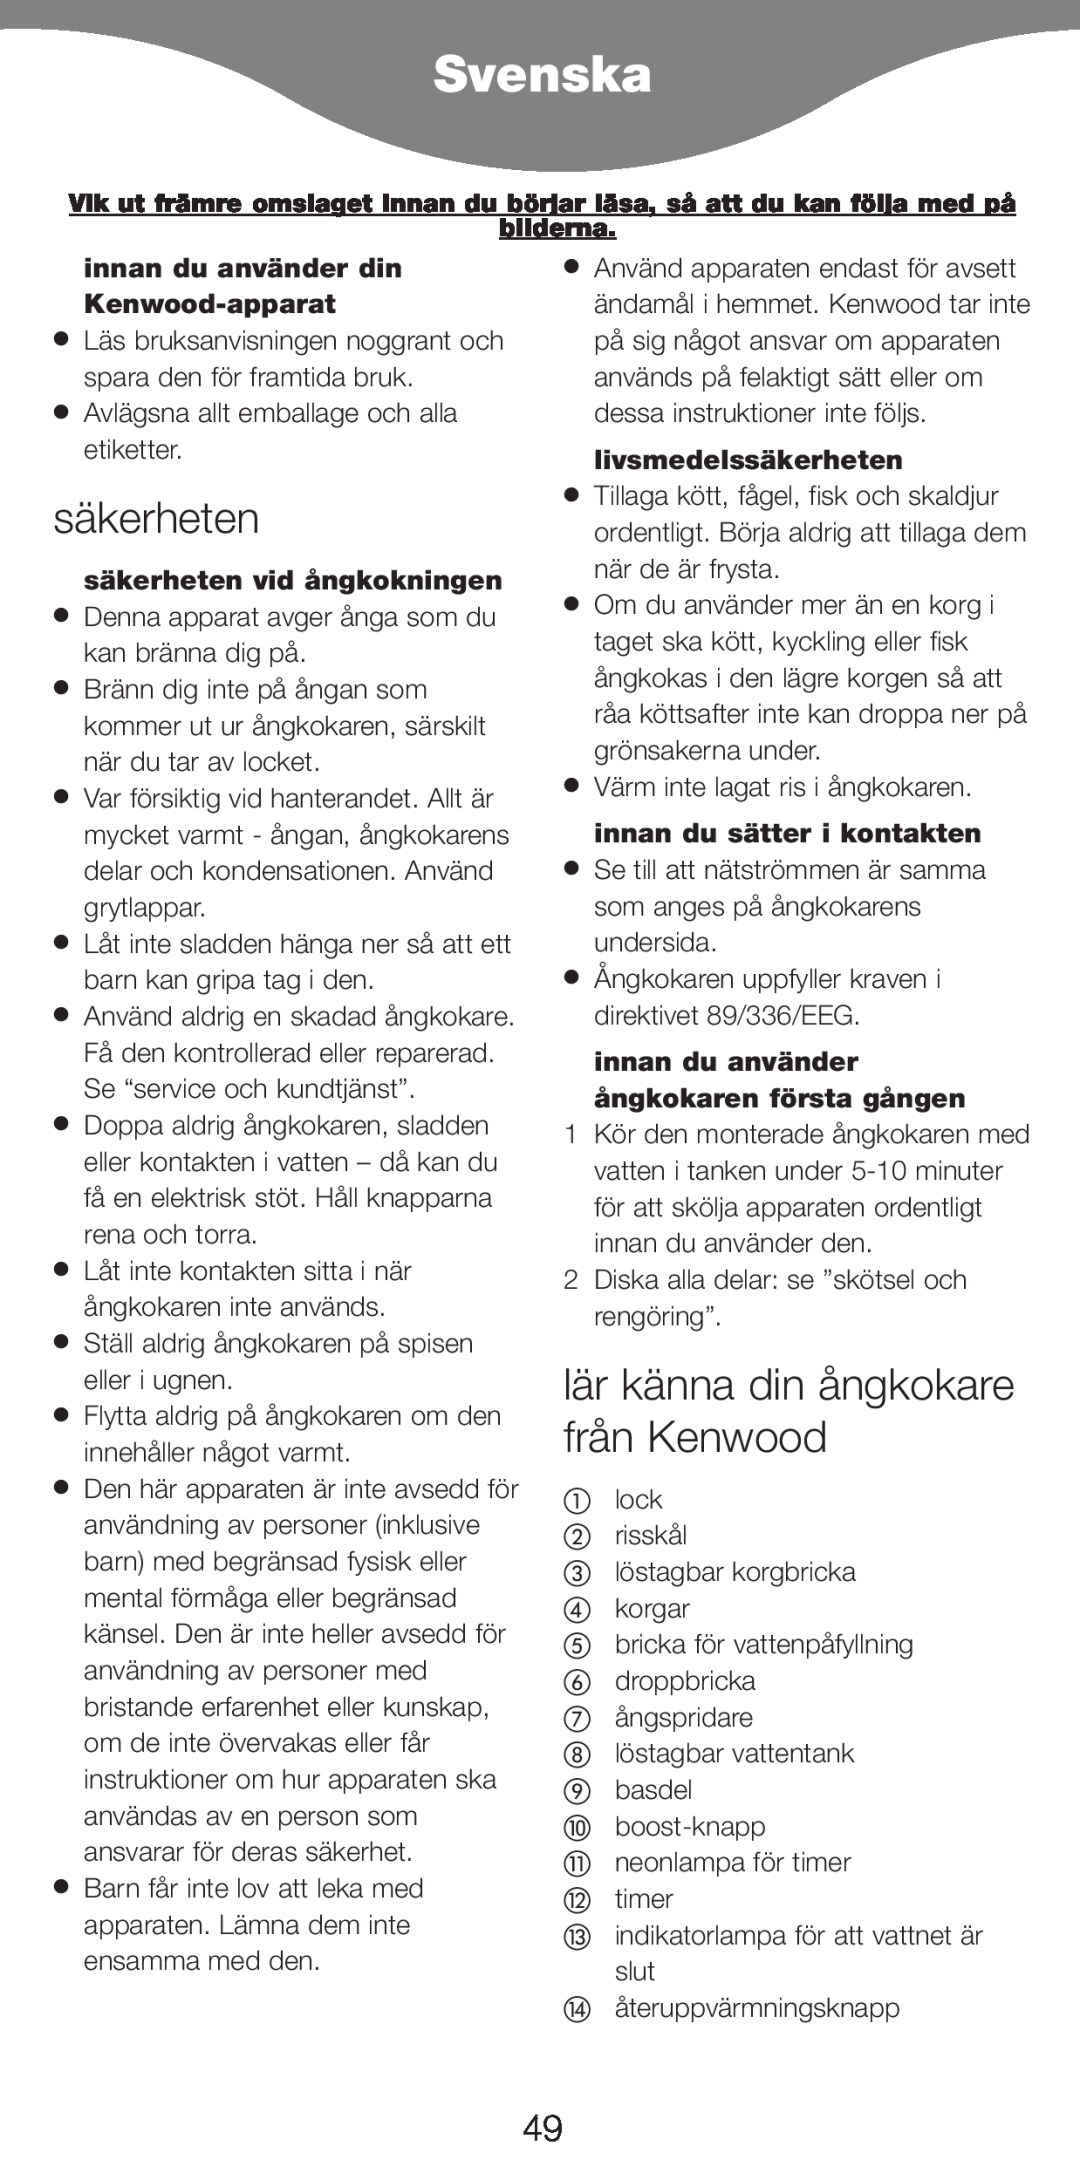 Kenwood FS620 manual Svenska, säkerheten, lär känna din ångkokare från Kenwood, innan du använder din Kenwood-apparat 